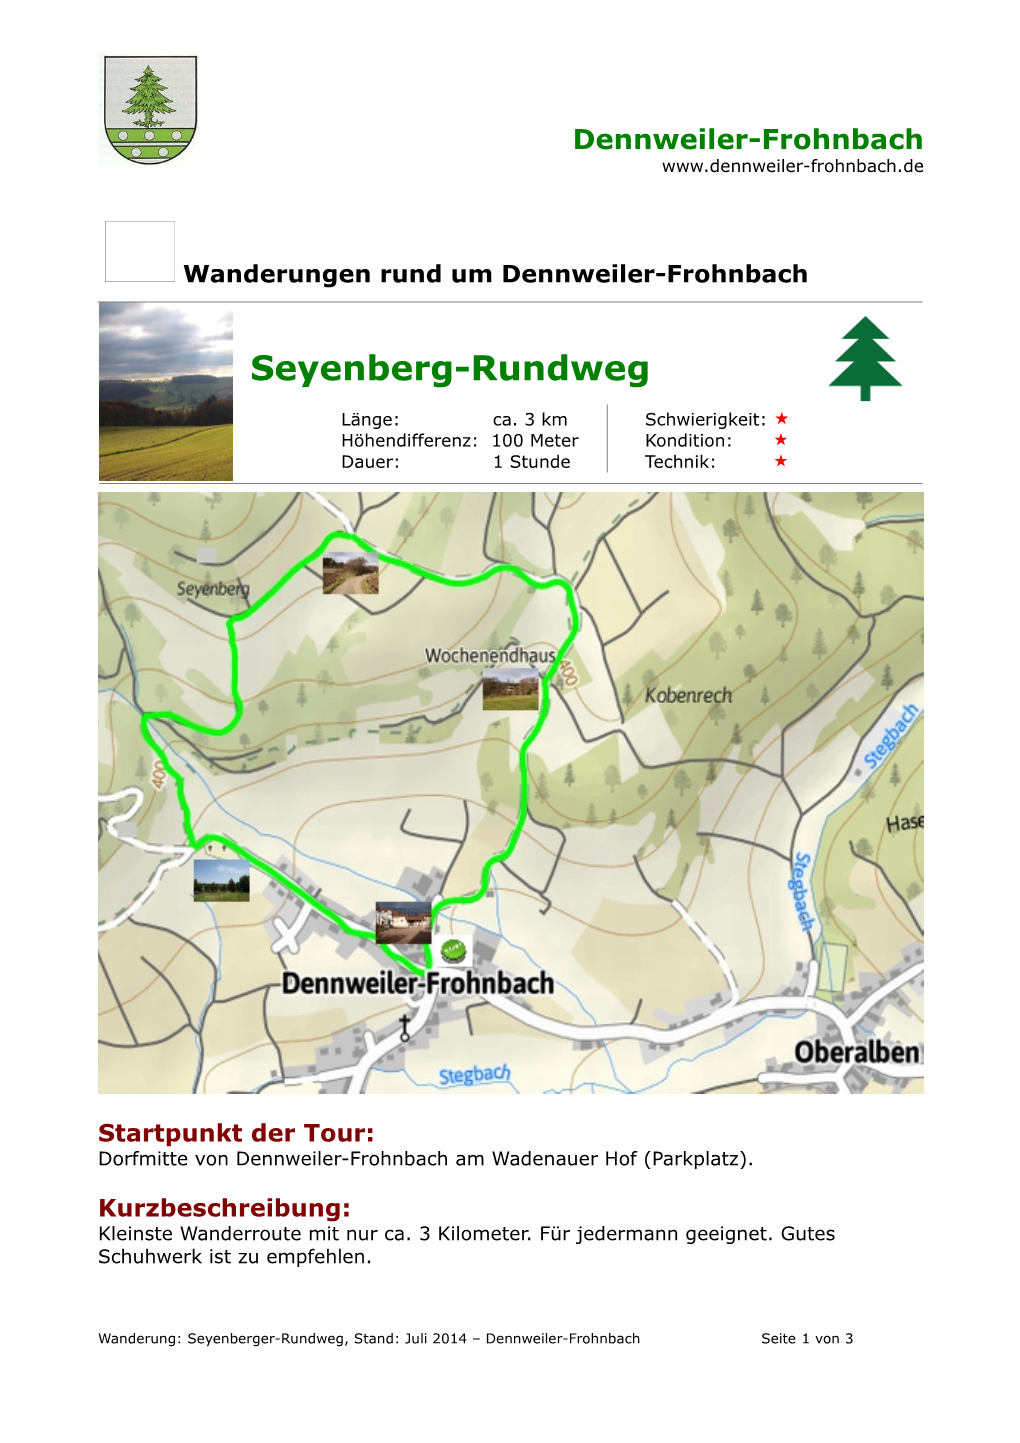 Seyenberg-Rundweg